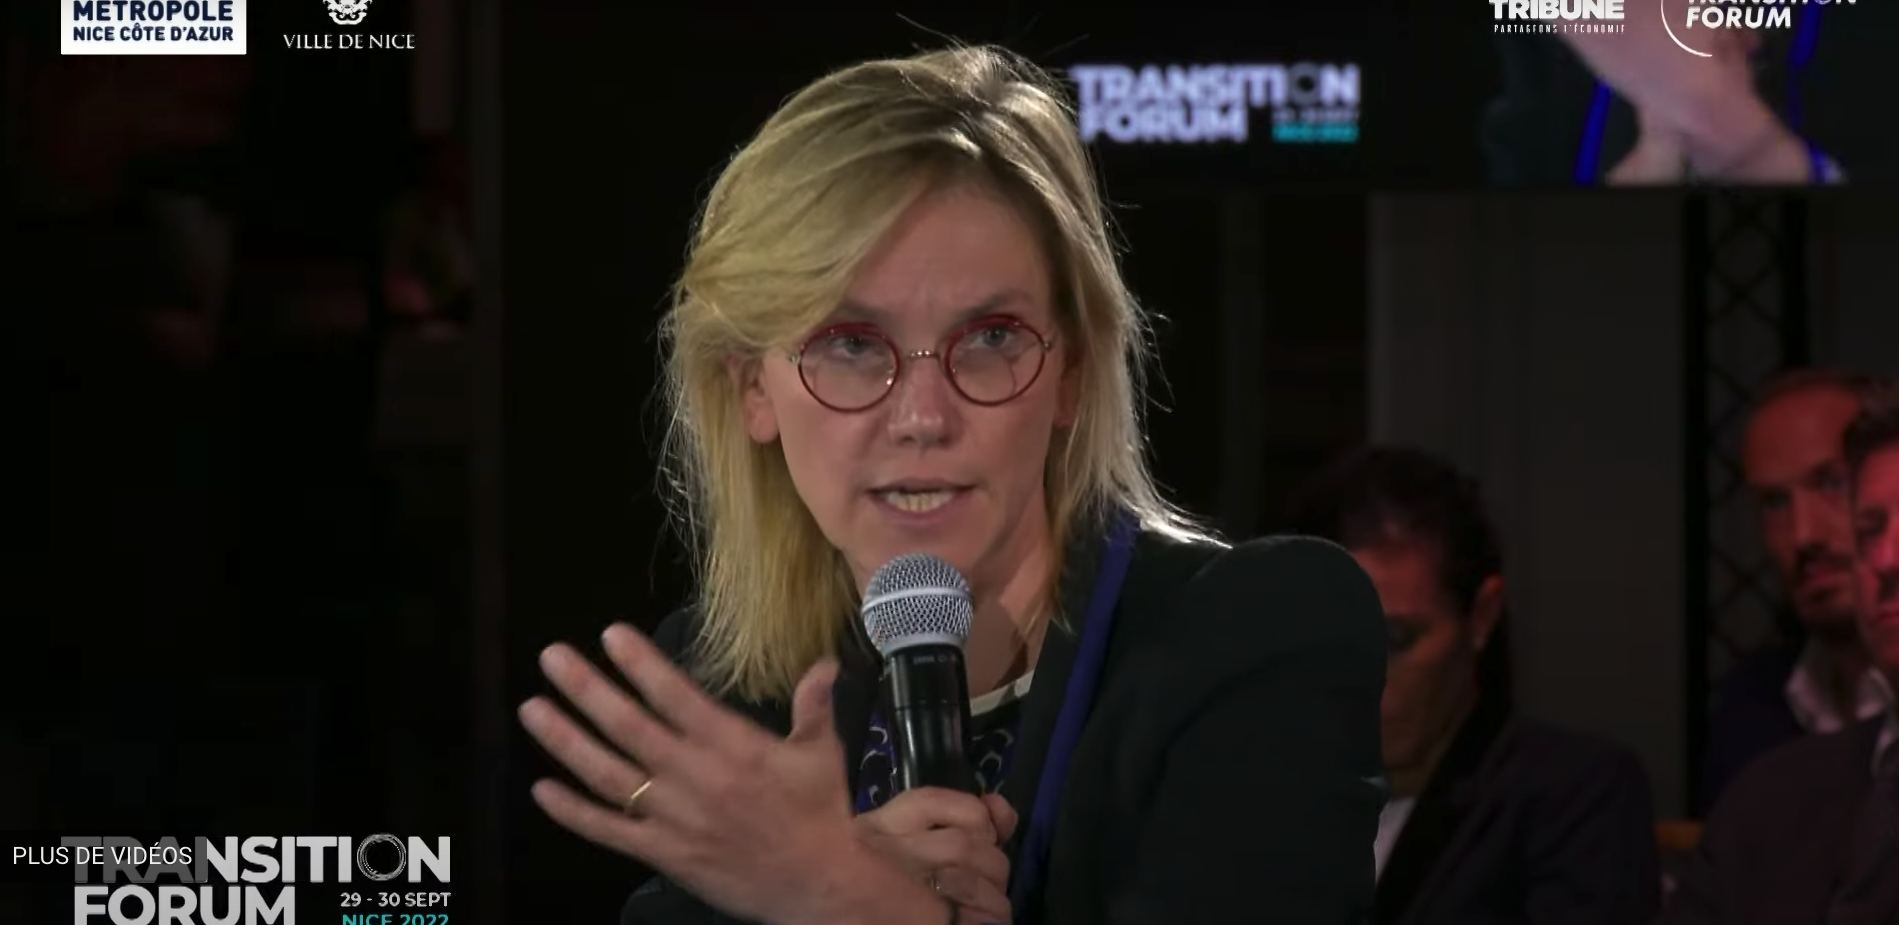 « Il faut que les projets d'énergies renouvelables soient vécus comme des chances pour les territoires », Agnès Pannier-Runacher, ministre de la Transition énergétique